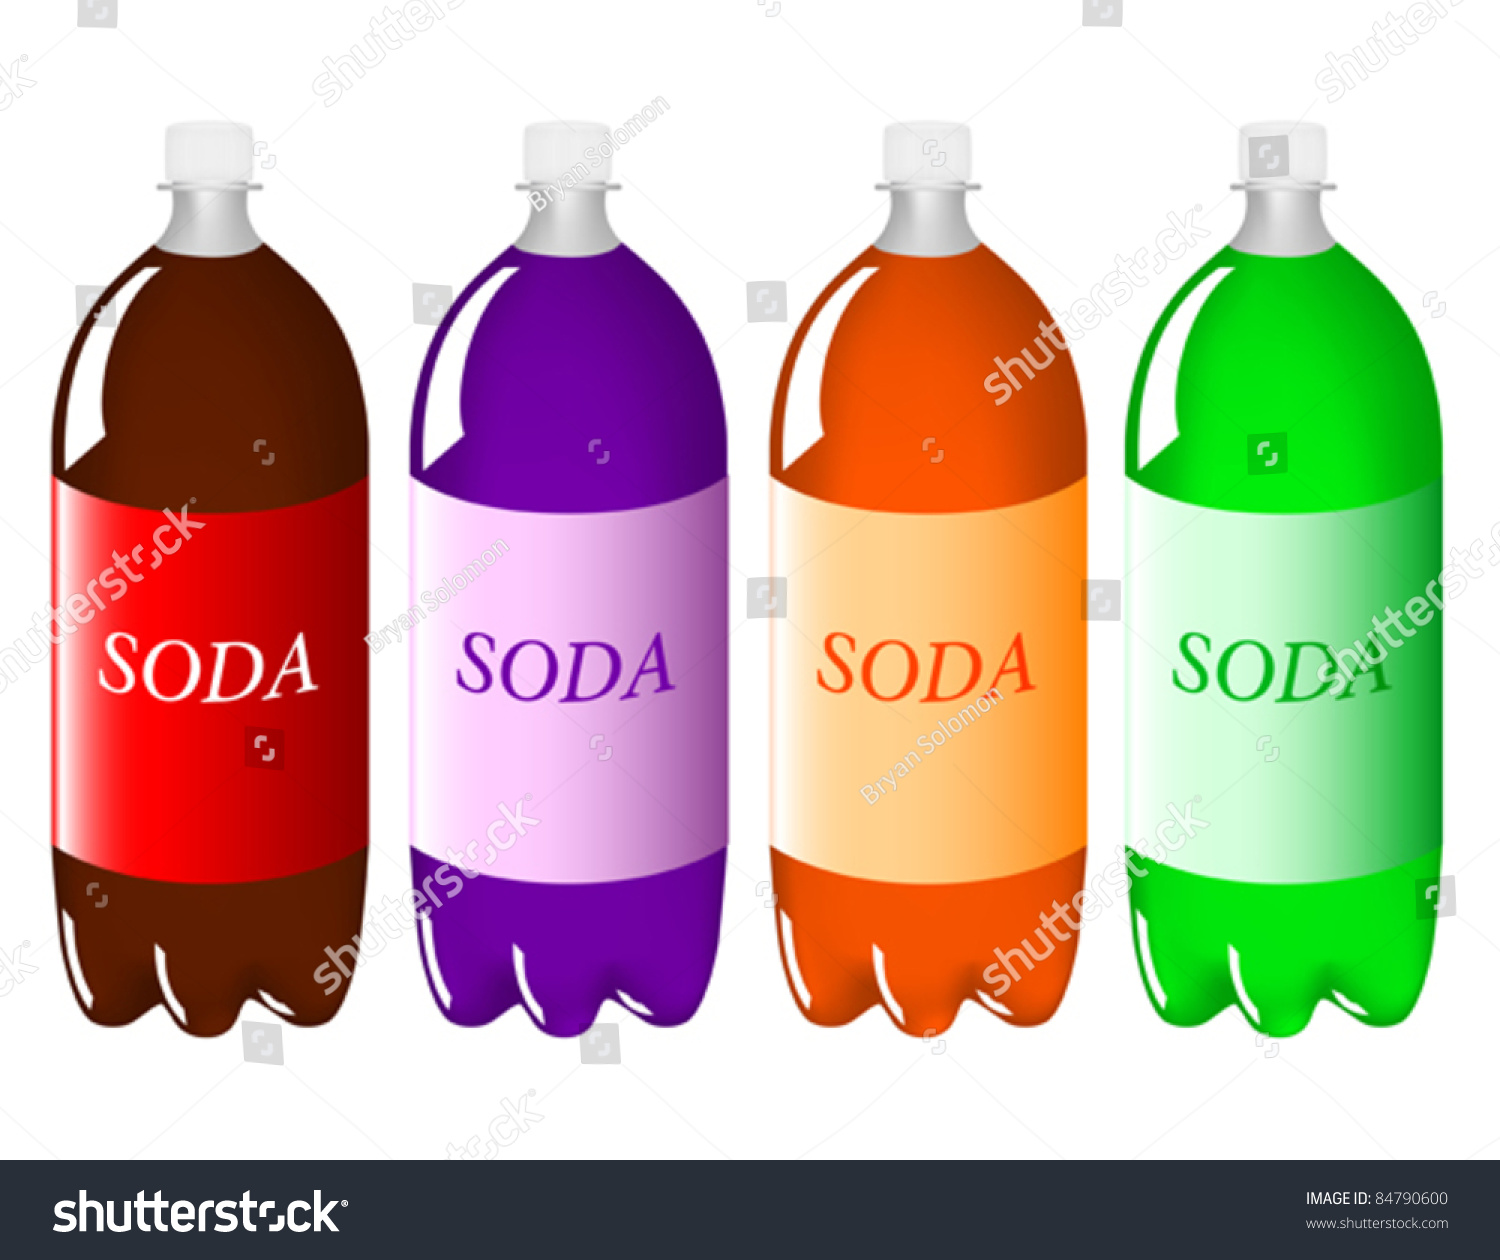 one liter bottle of soda clipart